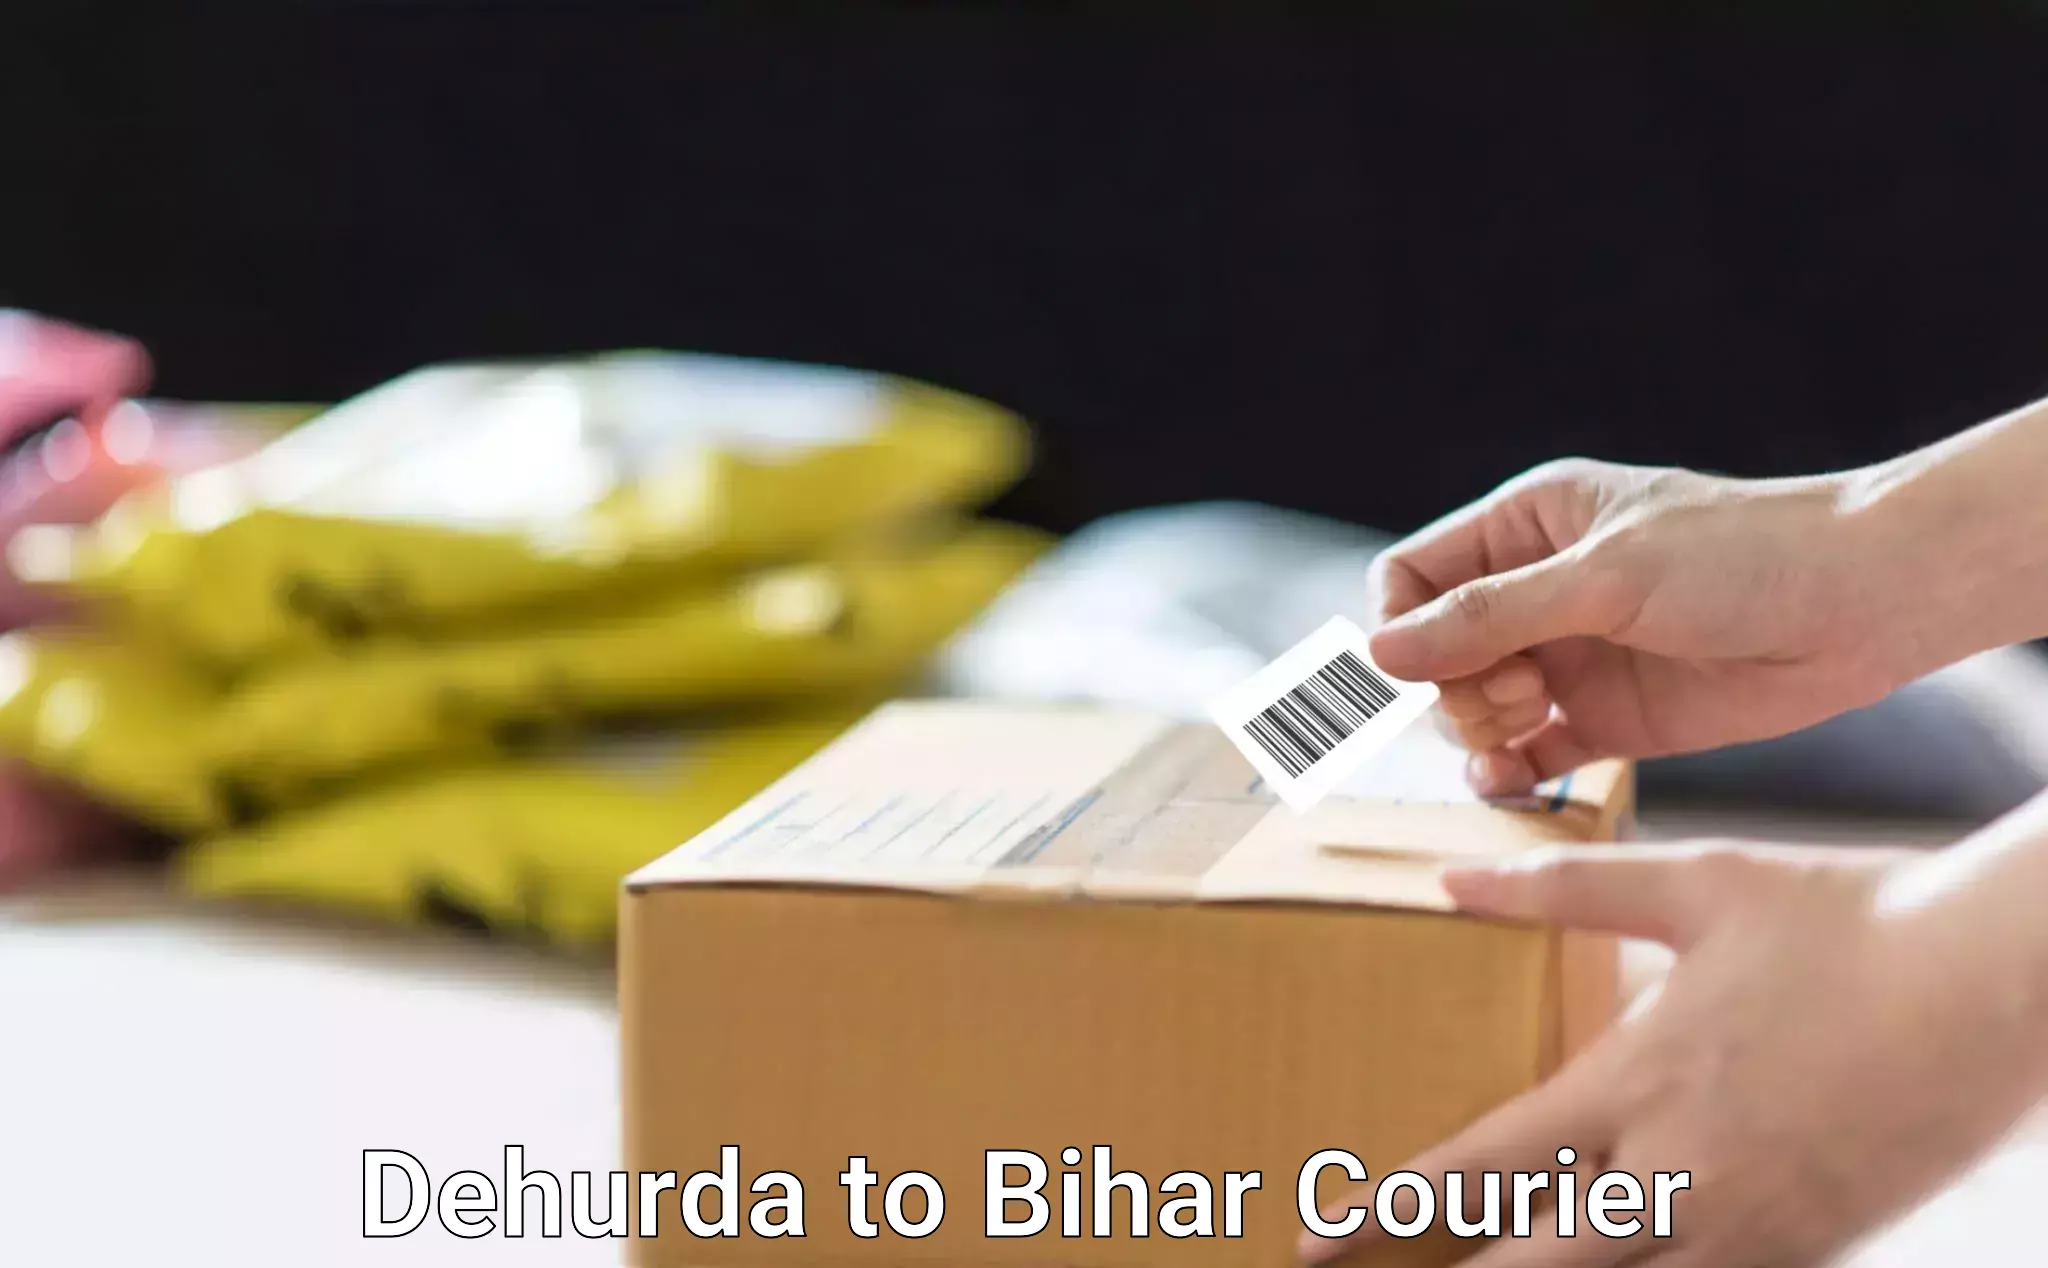 Door-to-door shipping Dehurda to Kudra